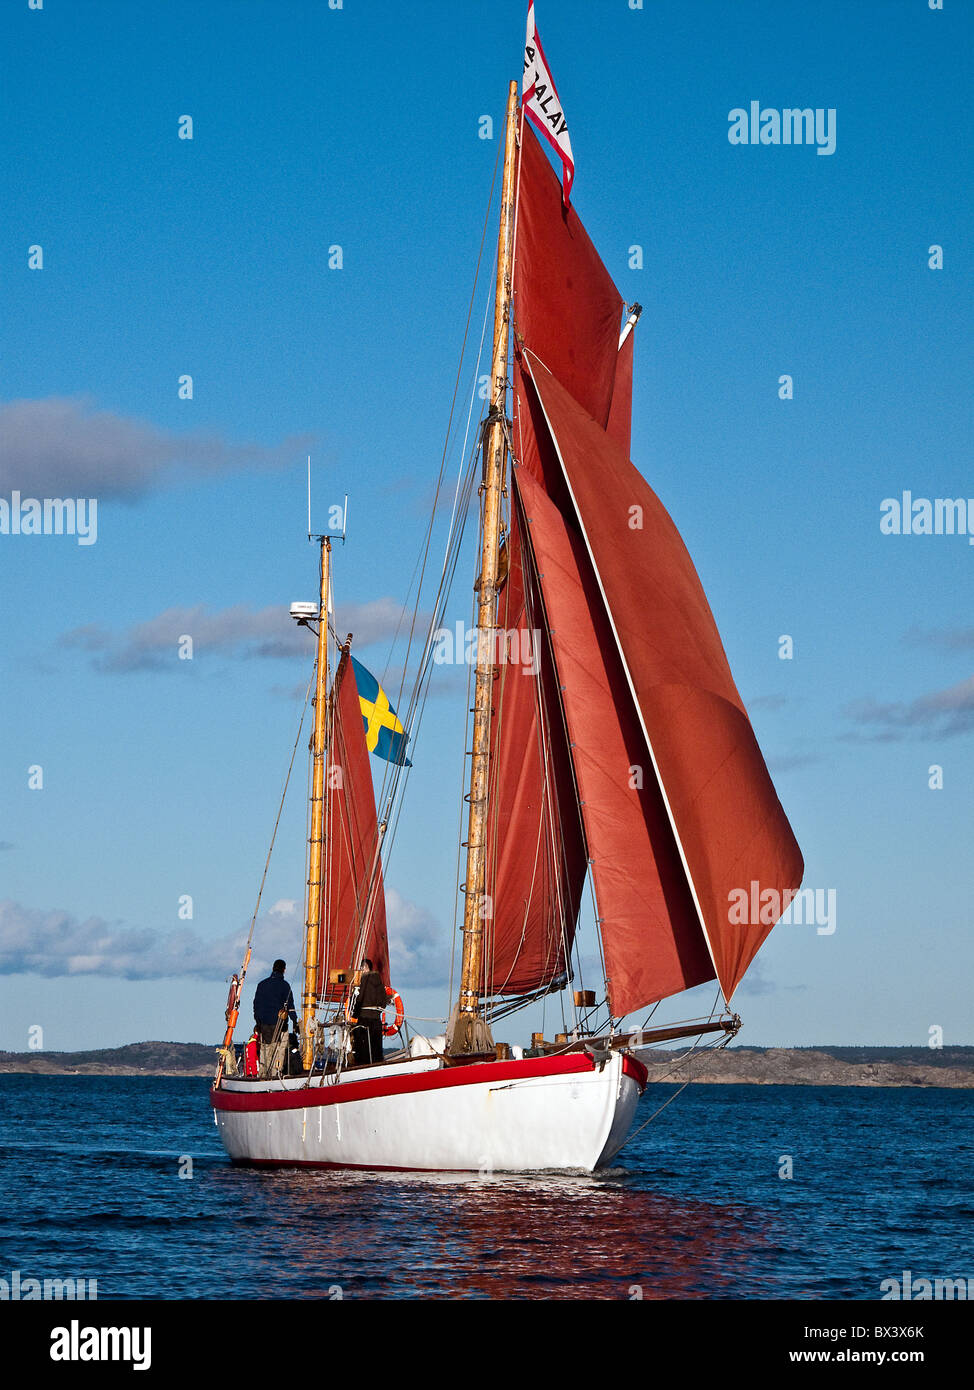 Gaff rig 2 masted ketch under sails. A sailboat Mandaly (home harbor Gothenburg, Sweden) built after Collin Archer design. Stock Photo